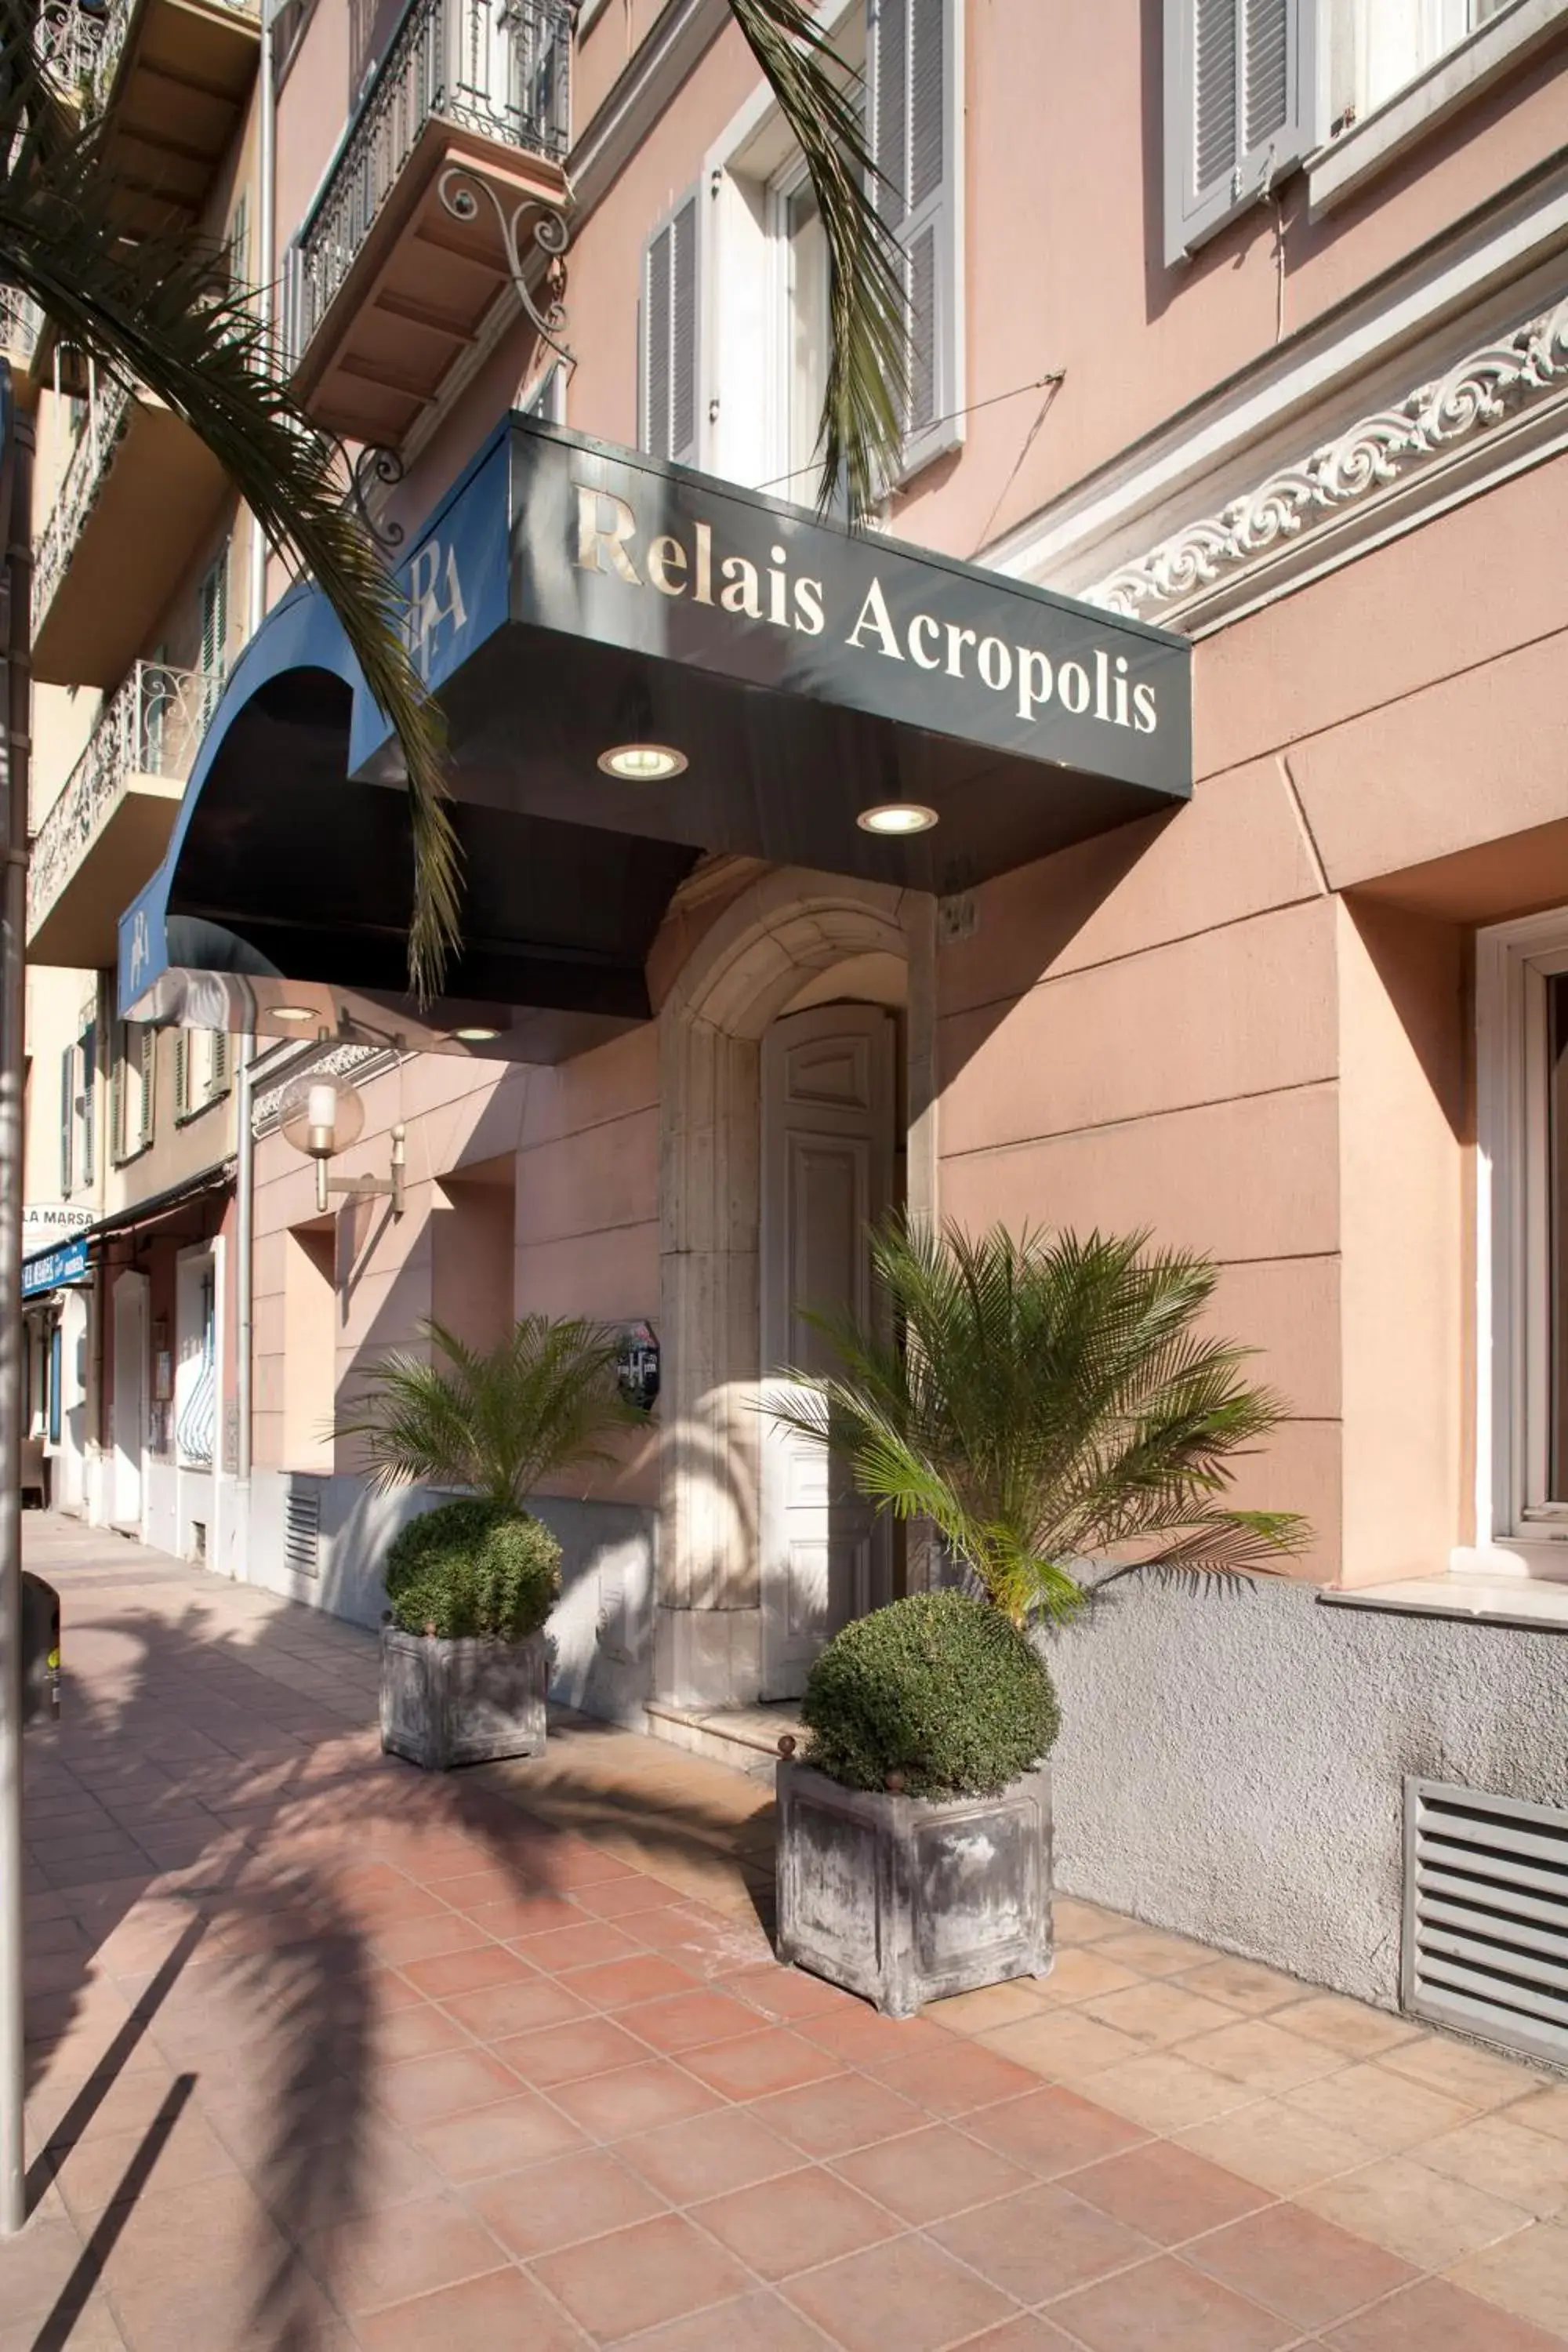 Facade/entrance in Hotel Relais Acropolis